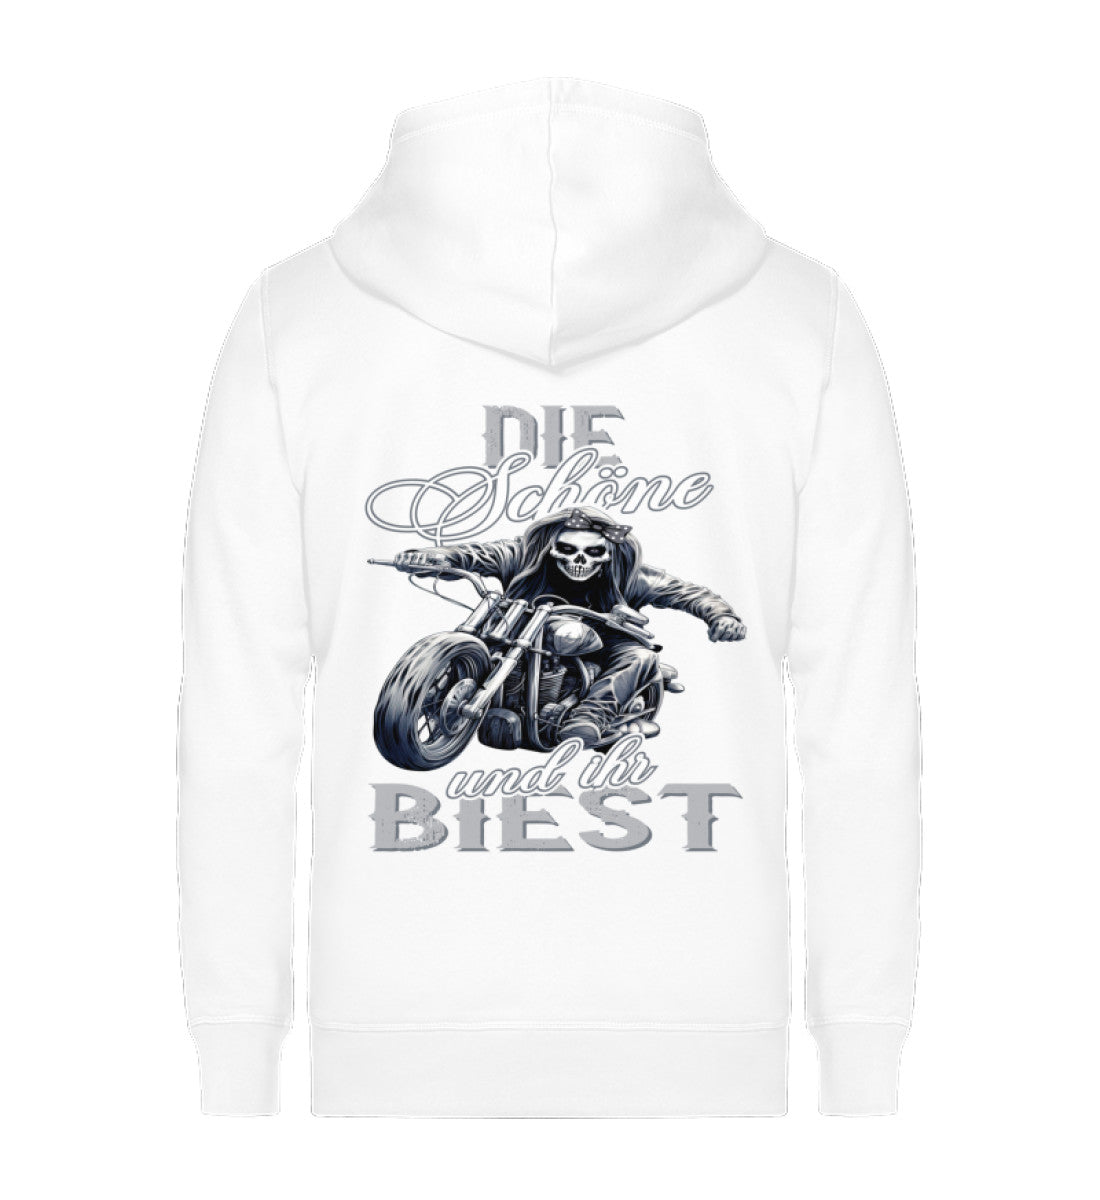 Ein Bikerin Zip-Hoodie für Motorradfahrerinnen von Wingbikers mit dem Aufdruck, Die Schöne und ihr Biest - in weiß.